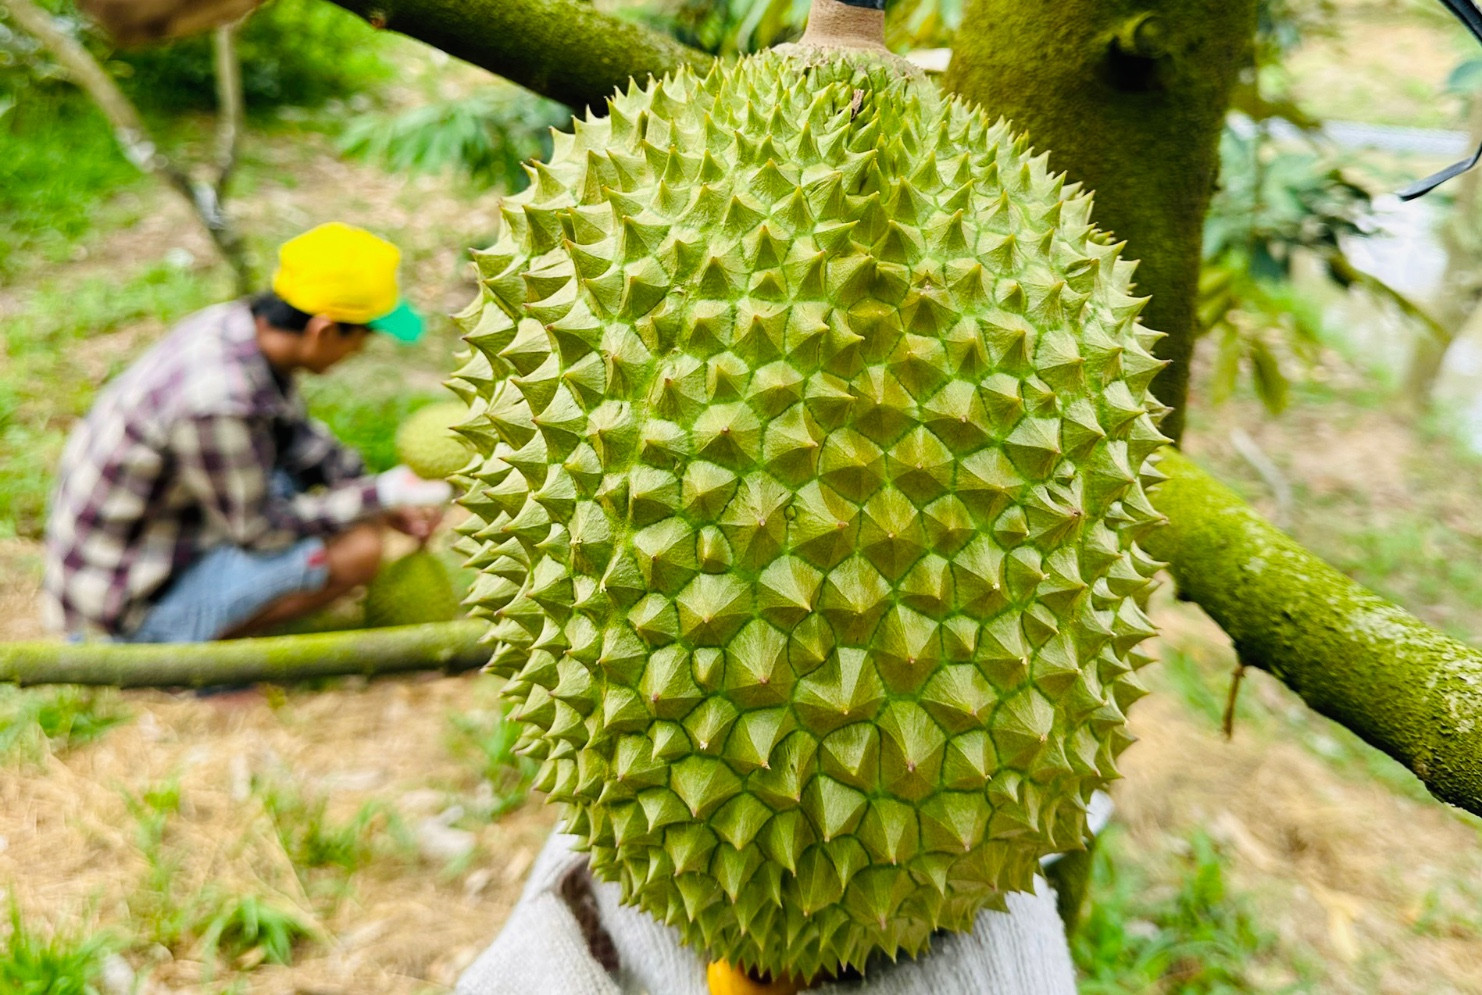 Sầu riêng ngon nhất thế giới trồng tại Việt Nam: 900 nghìn/kg, chờ nửa tháng mới có hàng